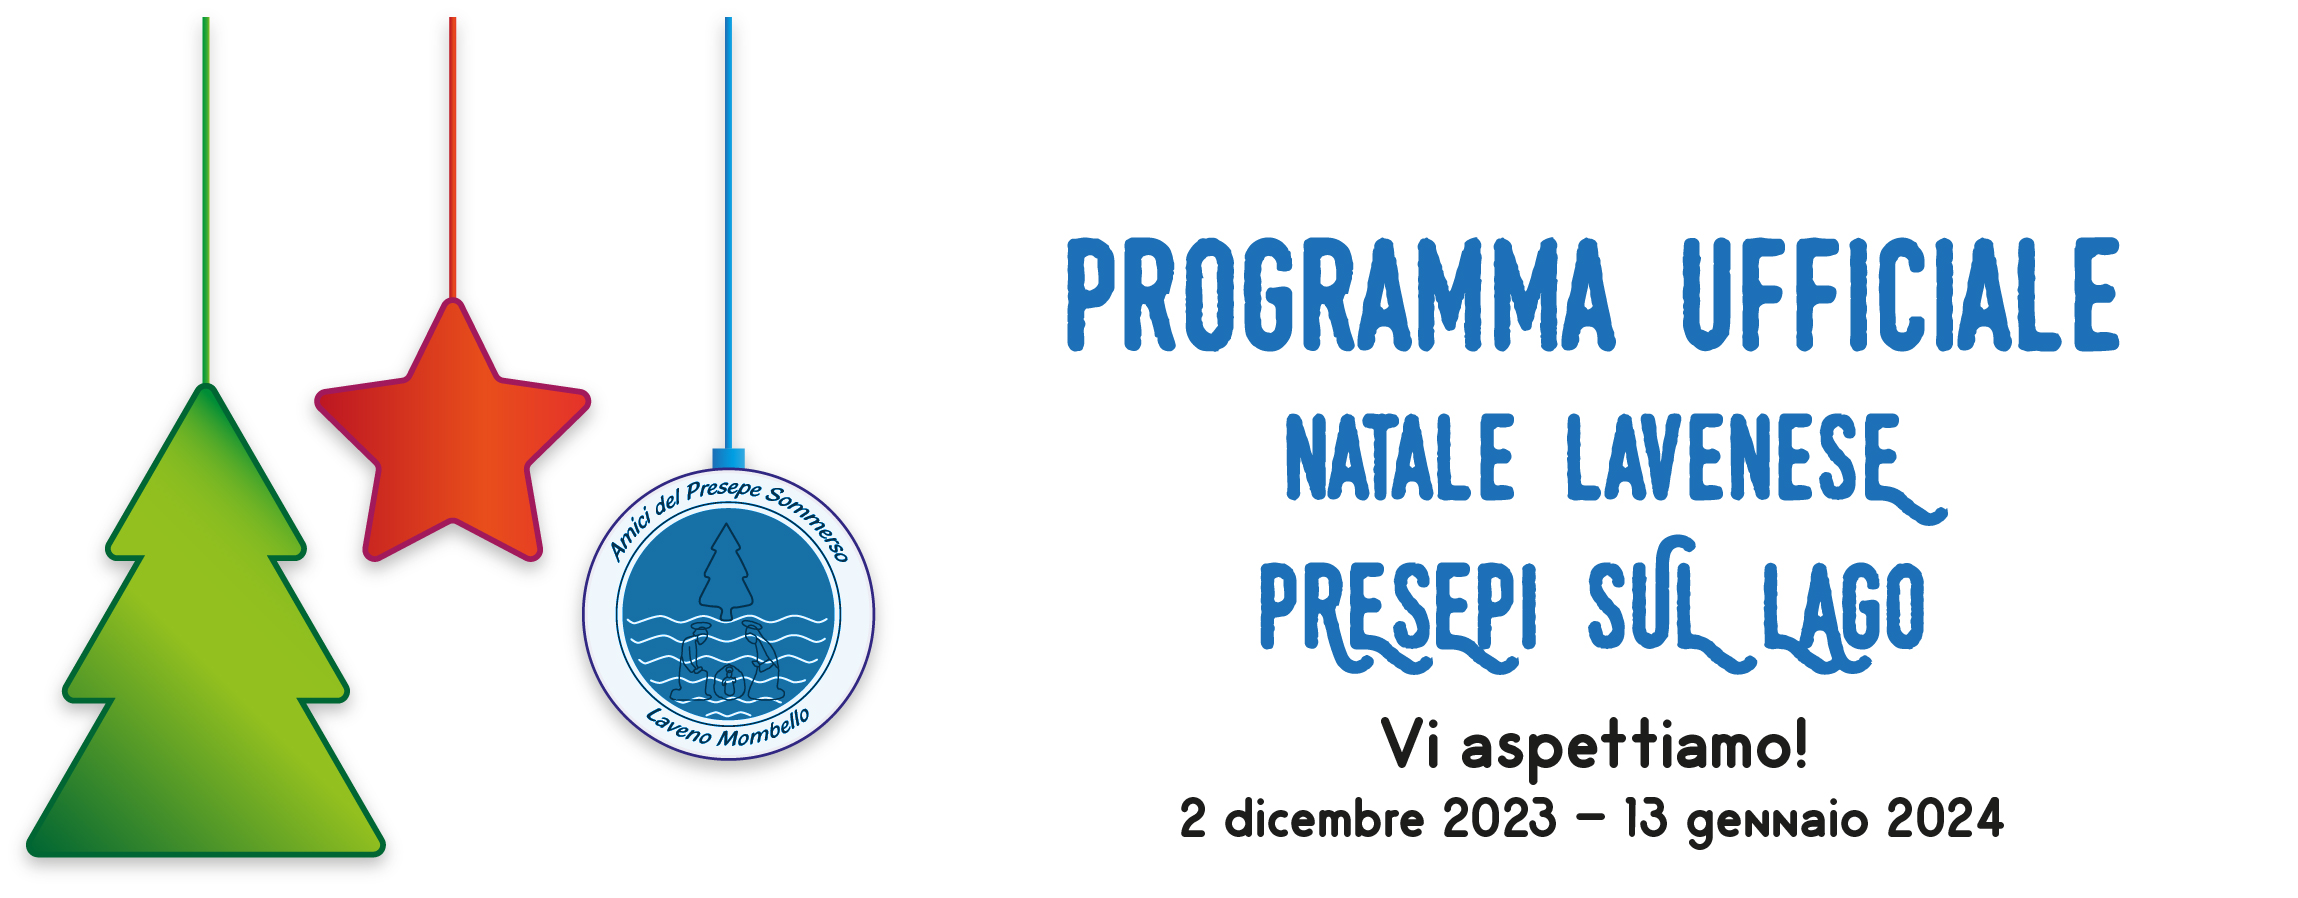 Il programma ufficiale della 44esima edizione del Presepe Sommerso lavenese